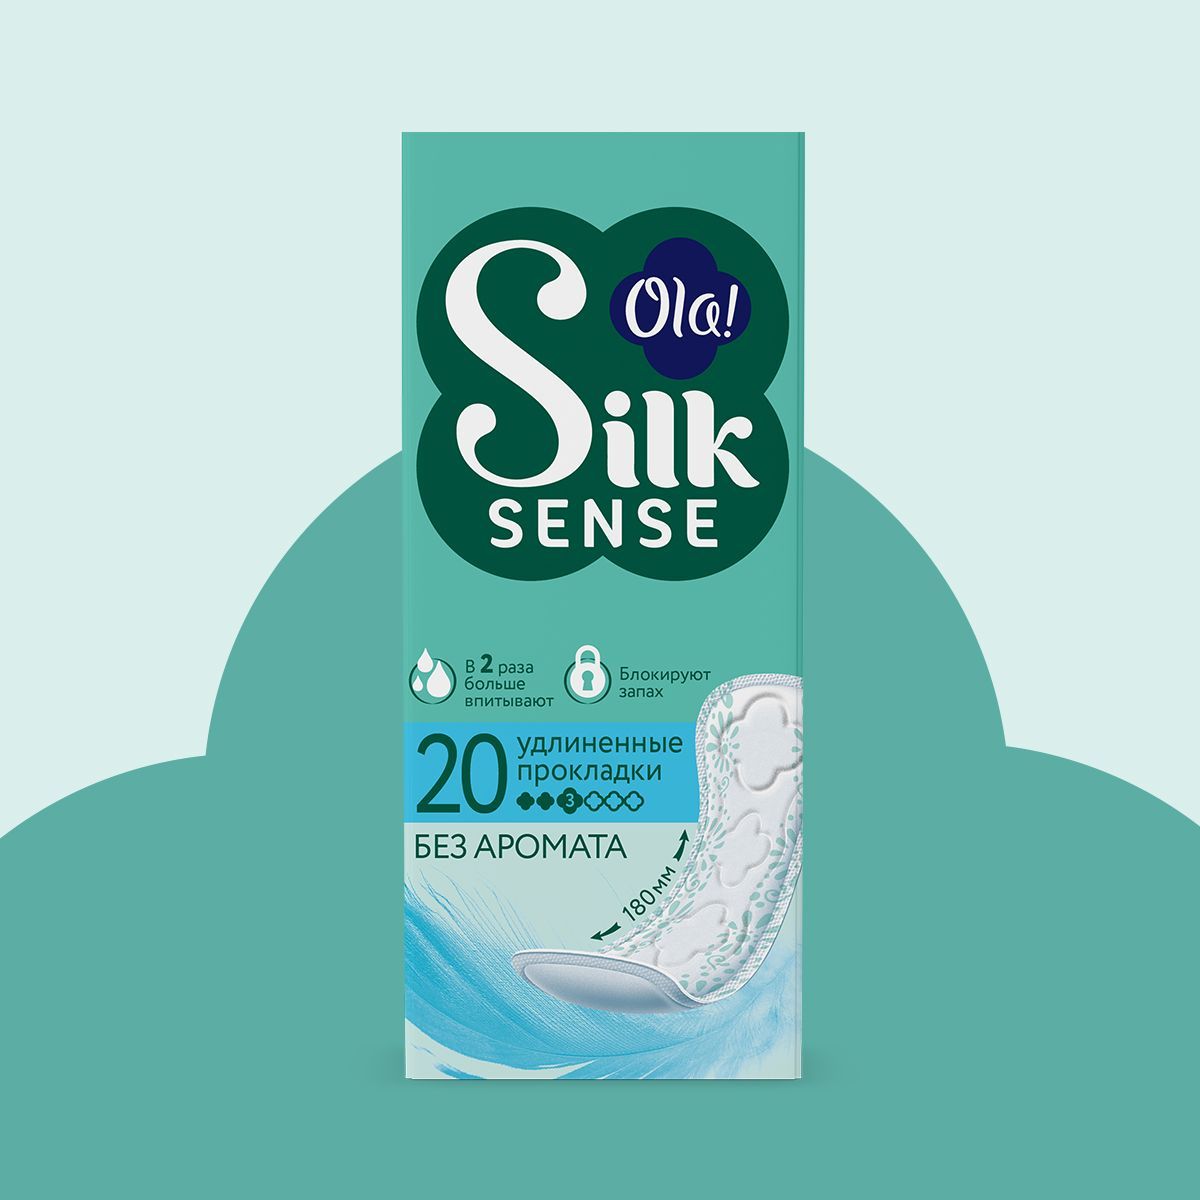 Ежедневные прокладки Ola! Silk Sense удлиненные без аромата 20 шт - фото 2